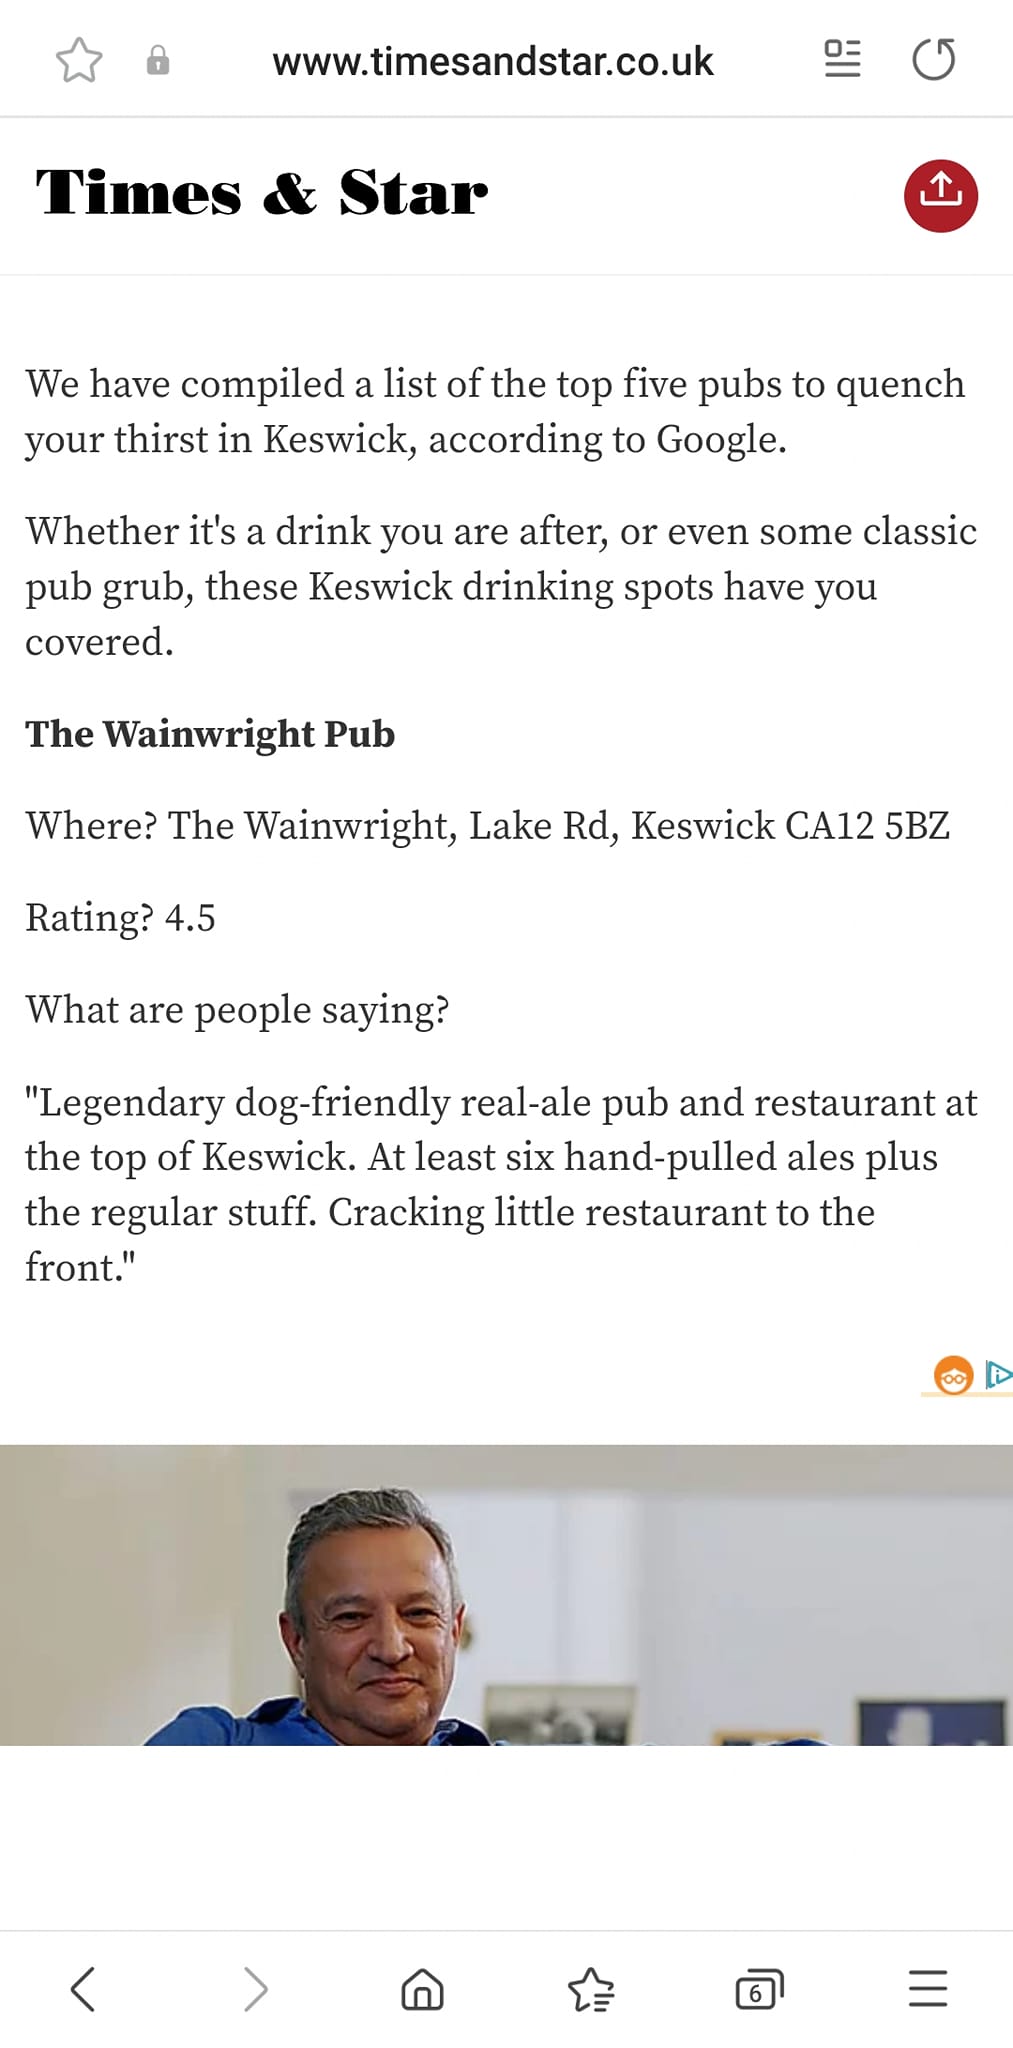 The Wainwright Pub